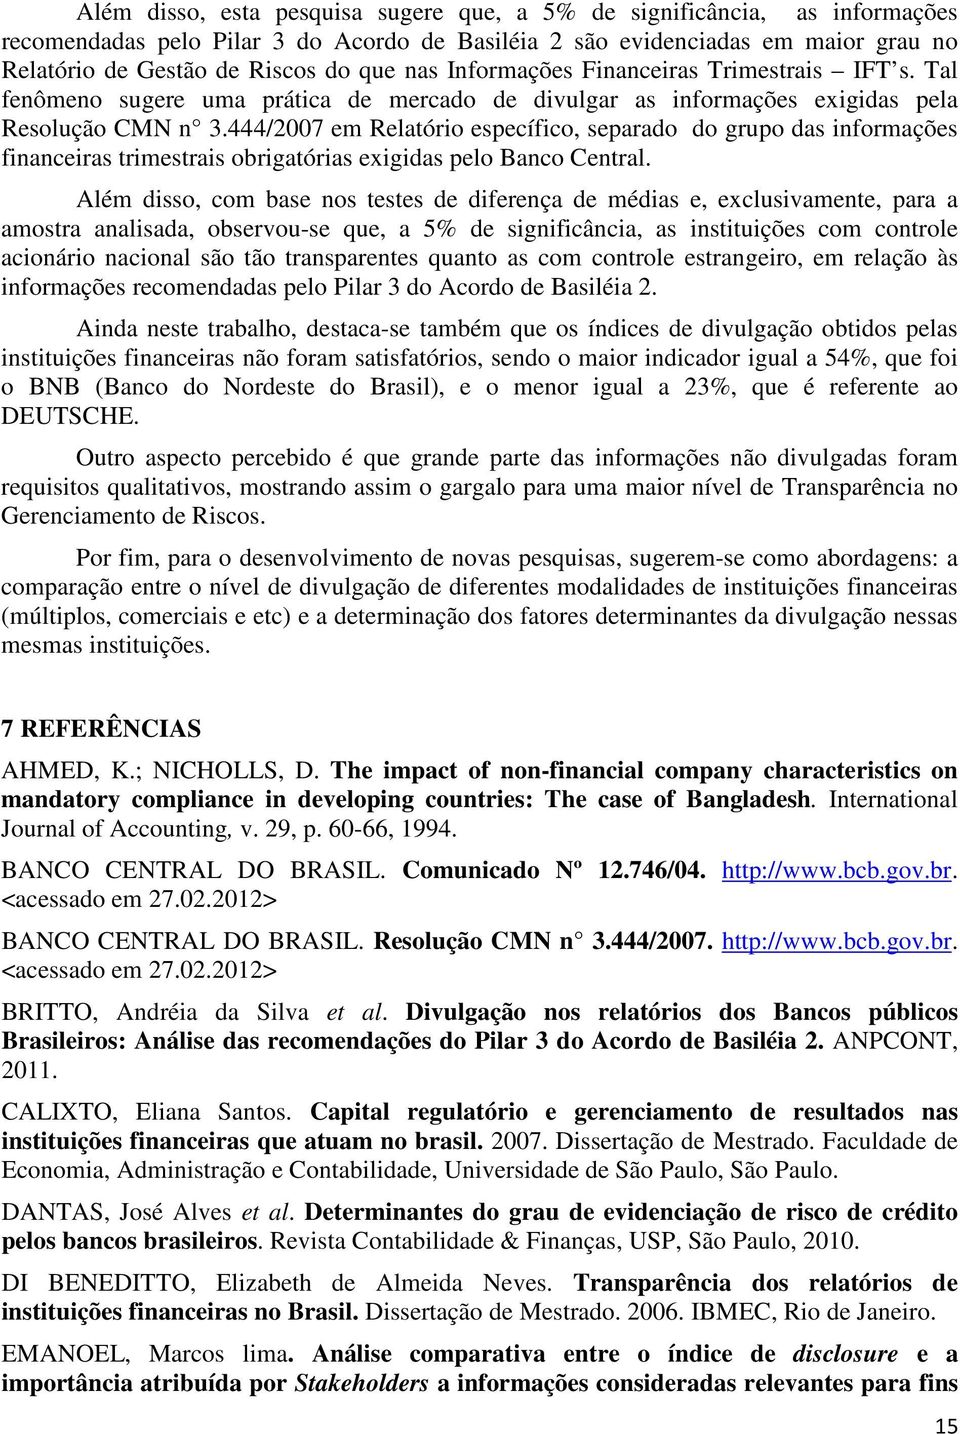 444/2007 em Relatório específico, separado do grupo das informações financeiras trimestrais obrigatórias exigidas pelo Banco Central.